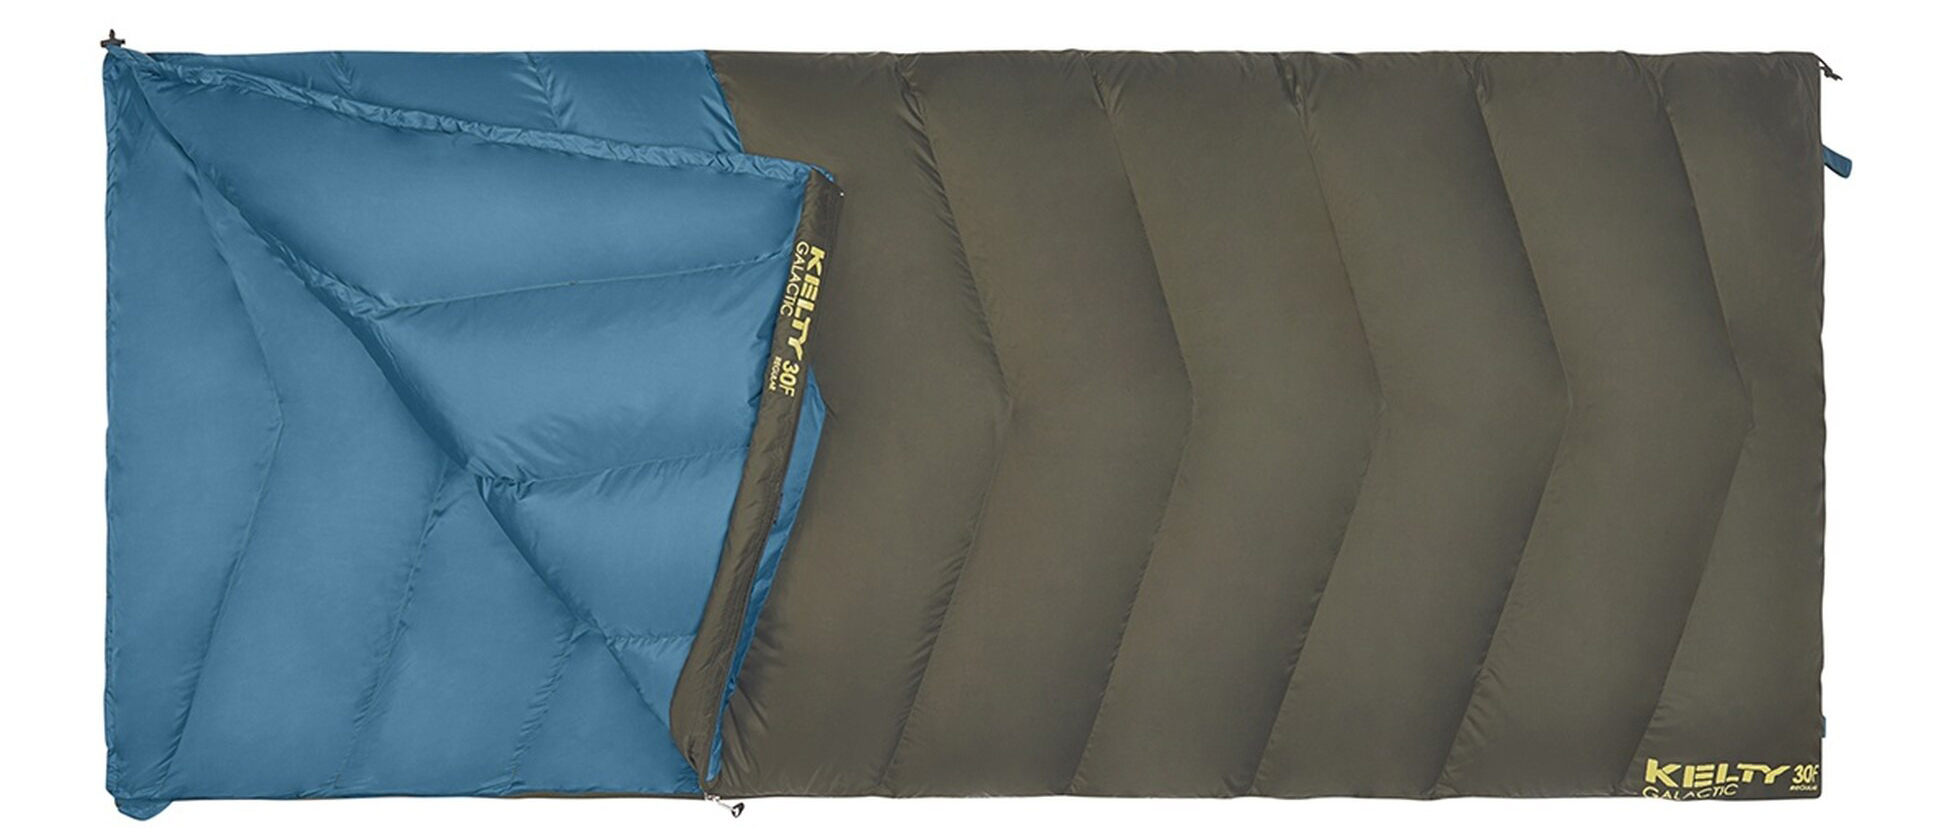 padded sleeping bag